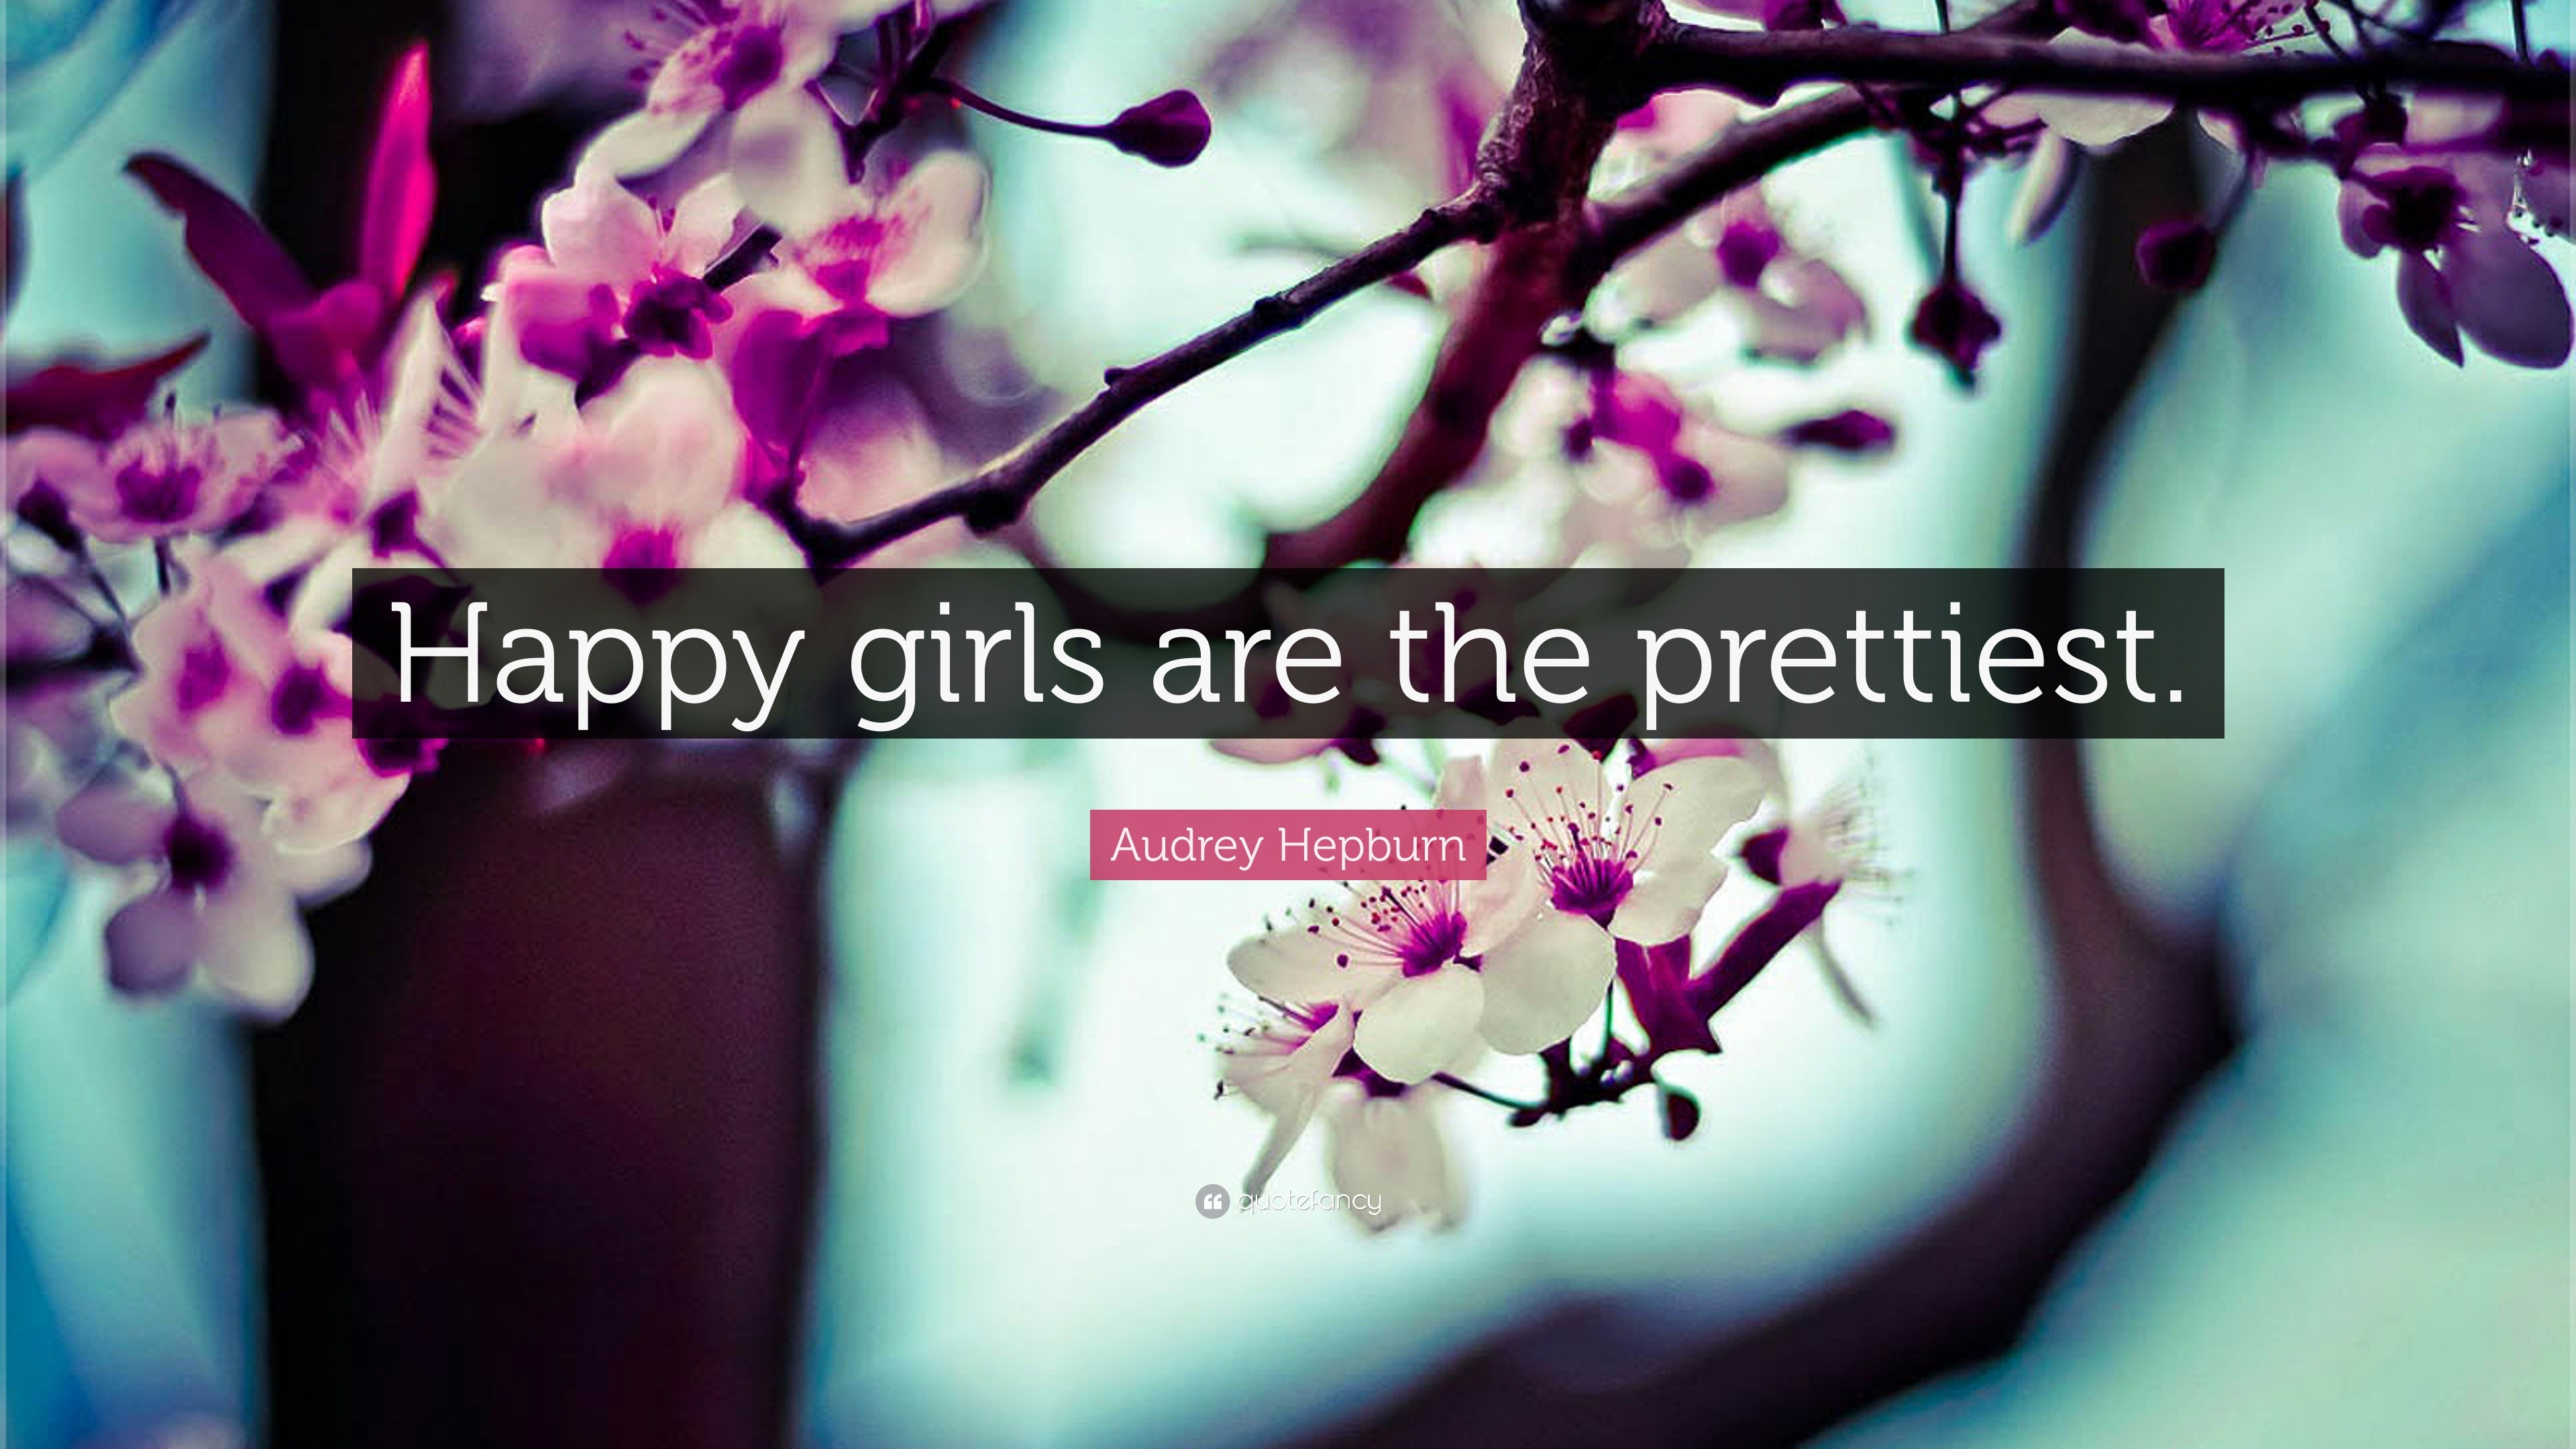 Audrey Hepburn Quote “Happy girls are the prettiest ”